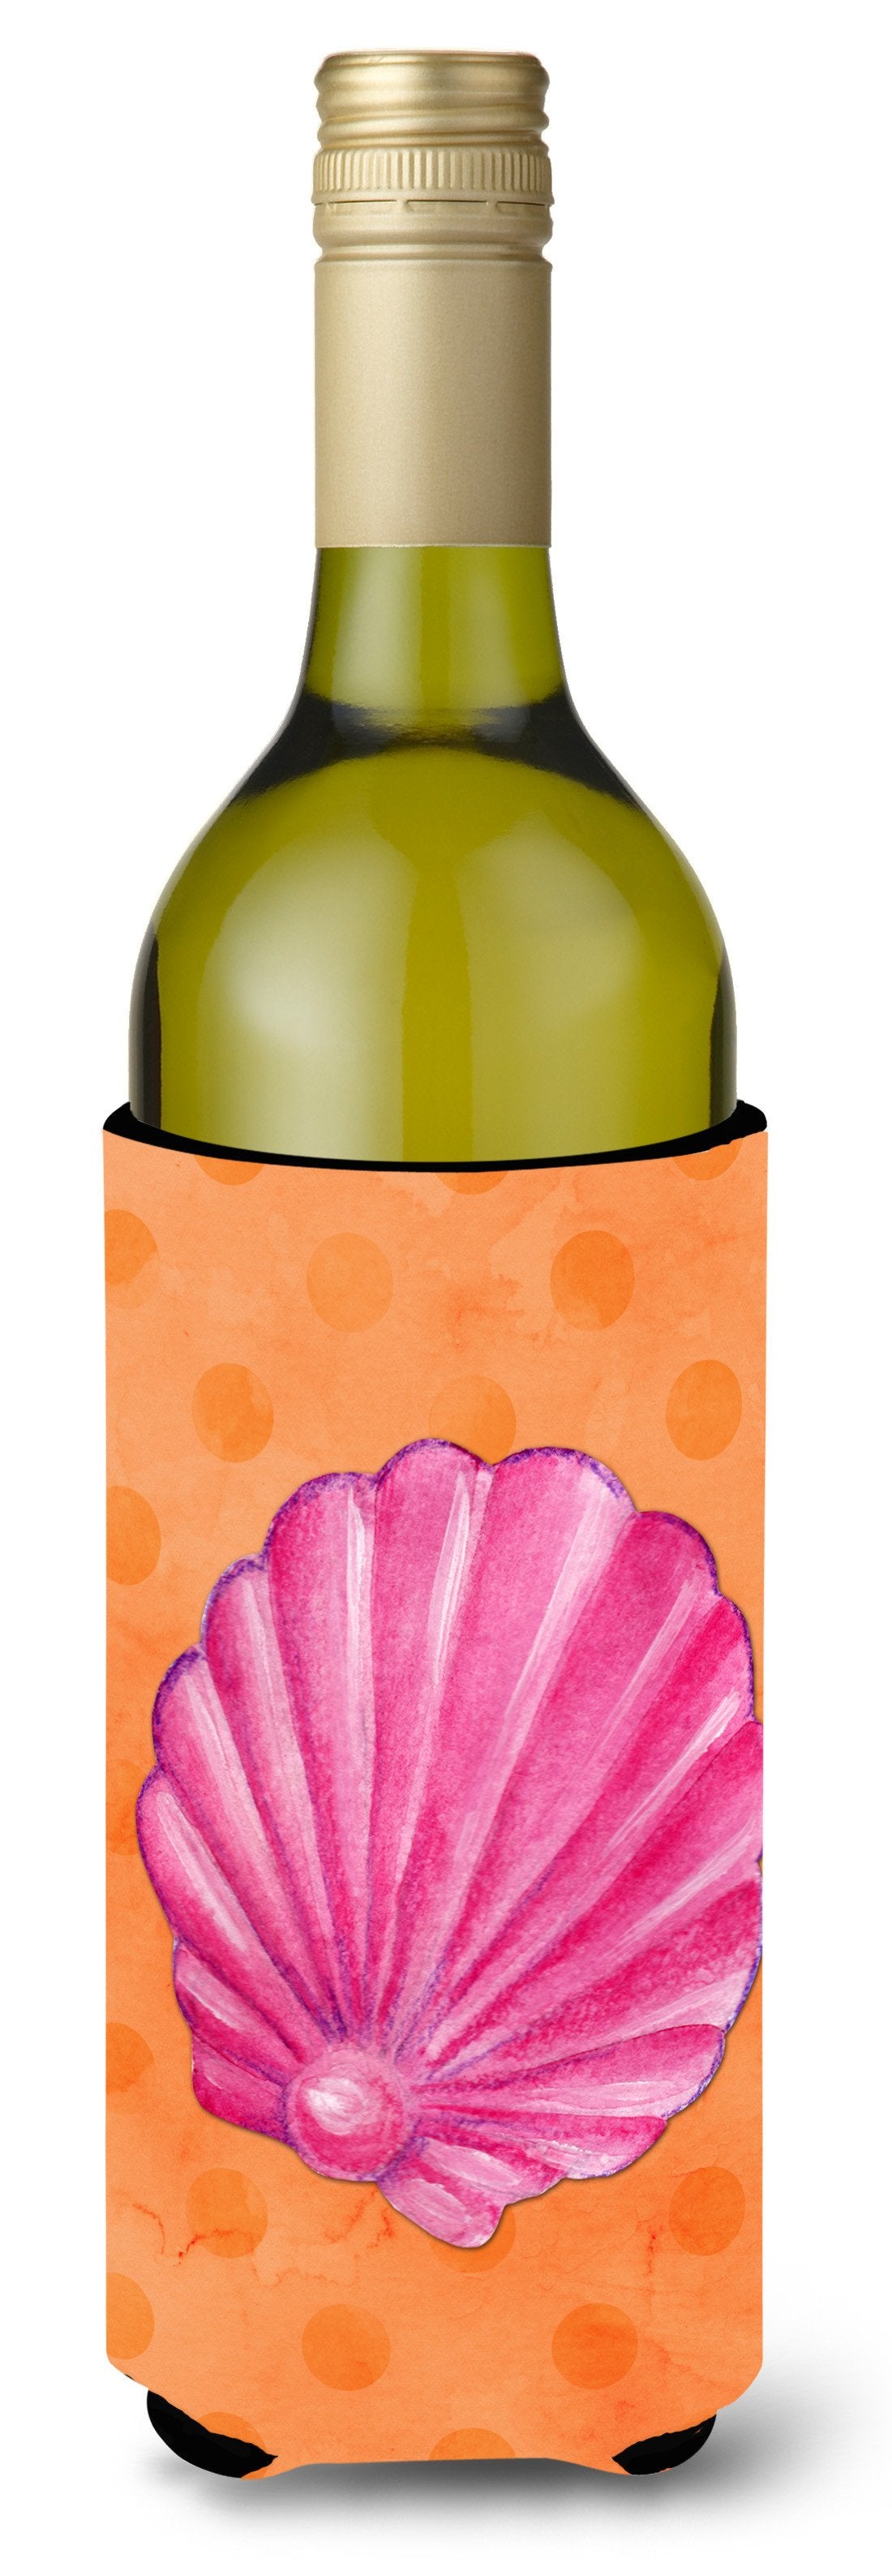 Pink Sea Shell Orange Polkadot Wine Bottle Beverge Insulator Hugger BB8243LITERK by Caroline's Treasures